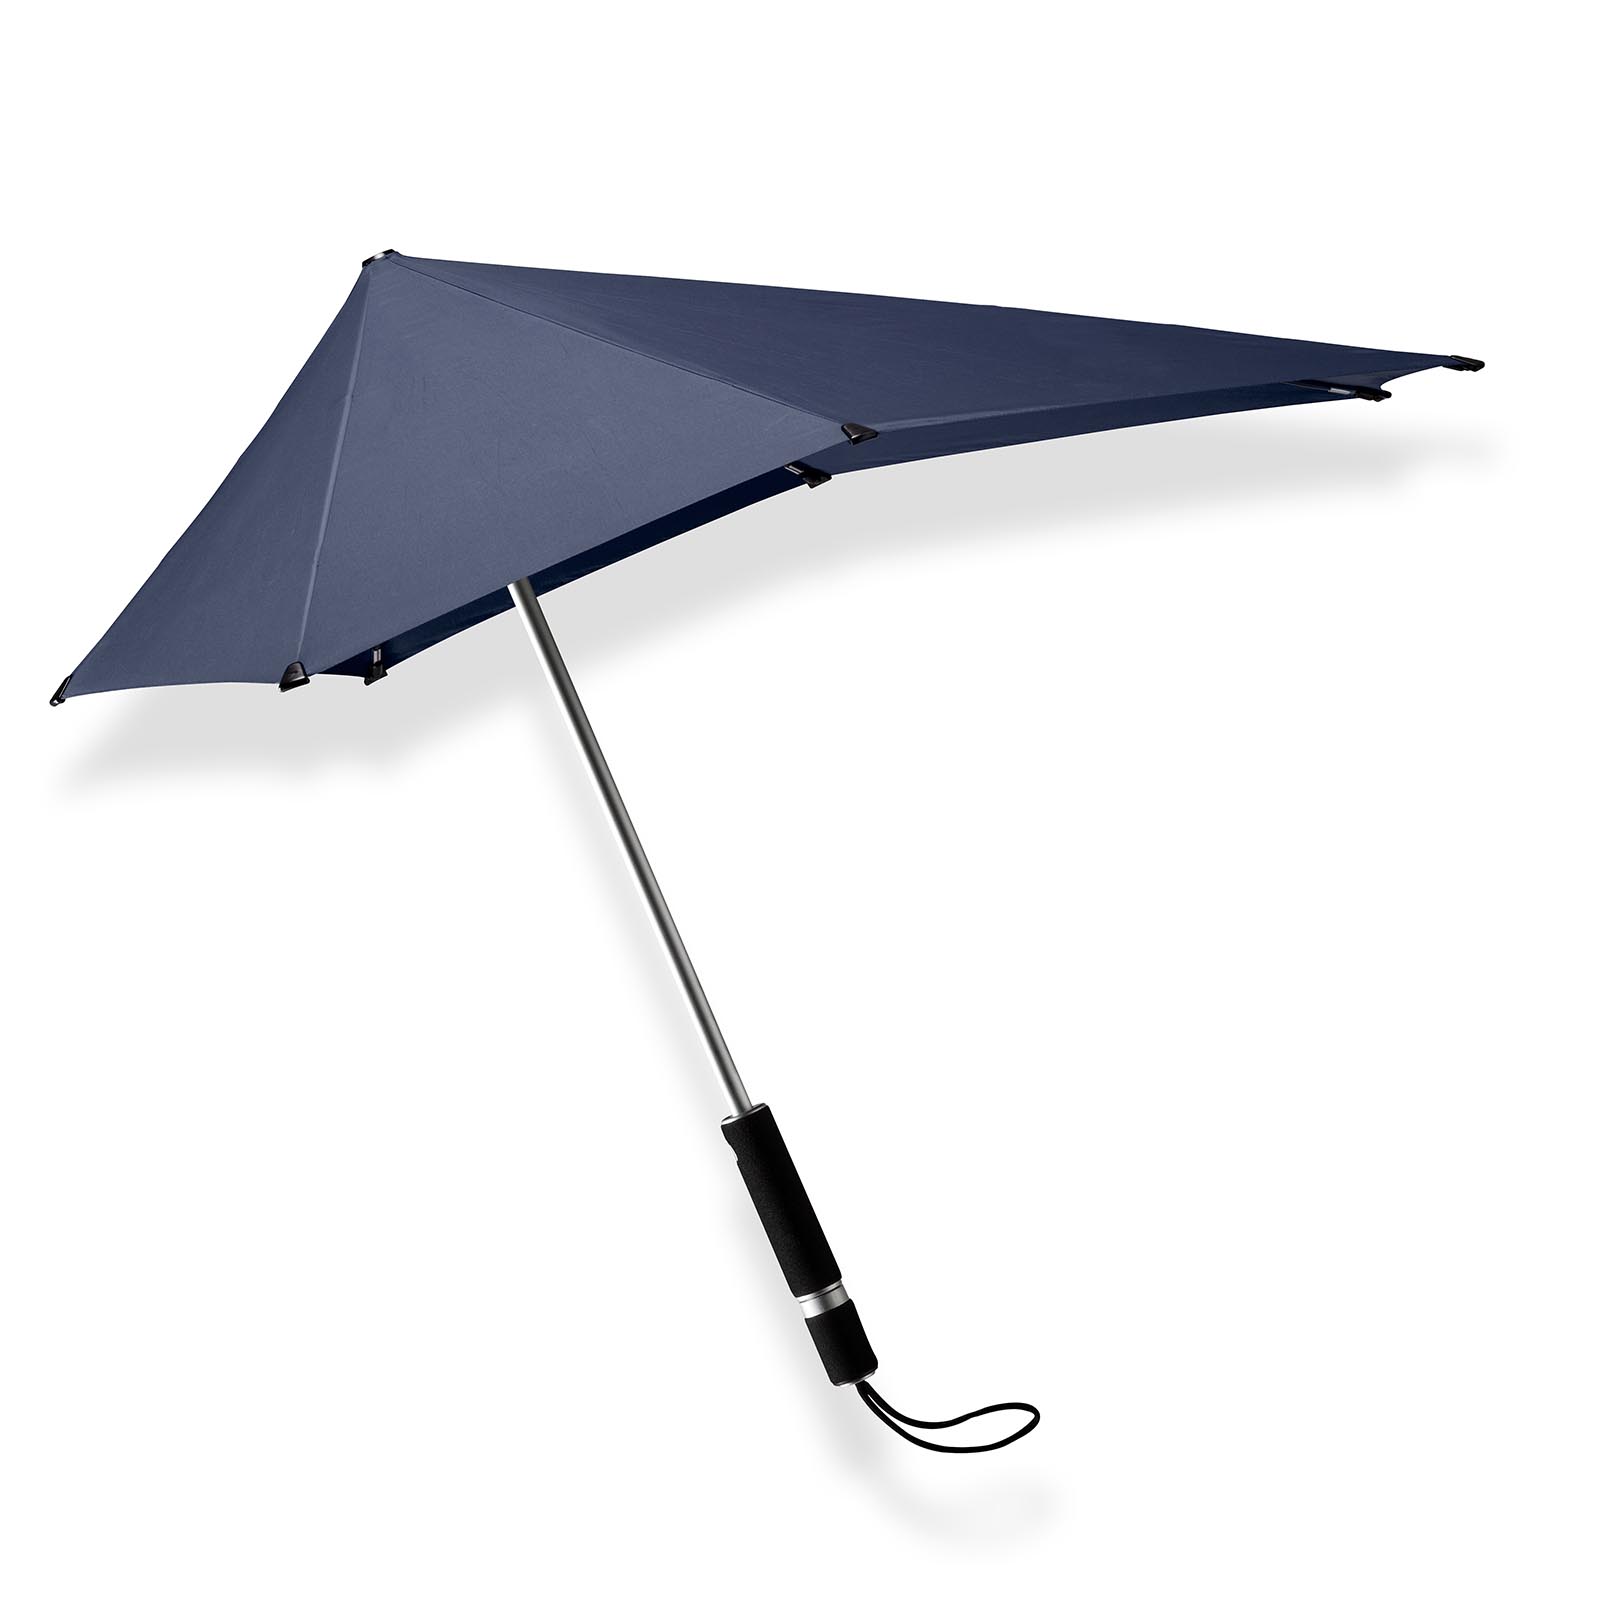 diepvries Bedenk Verandert in Blauwe lange paraplu original kopen? senz° original midnight blue